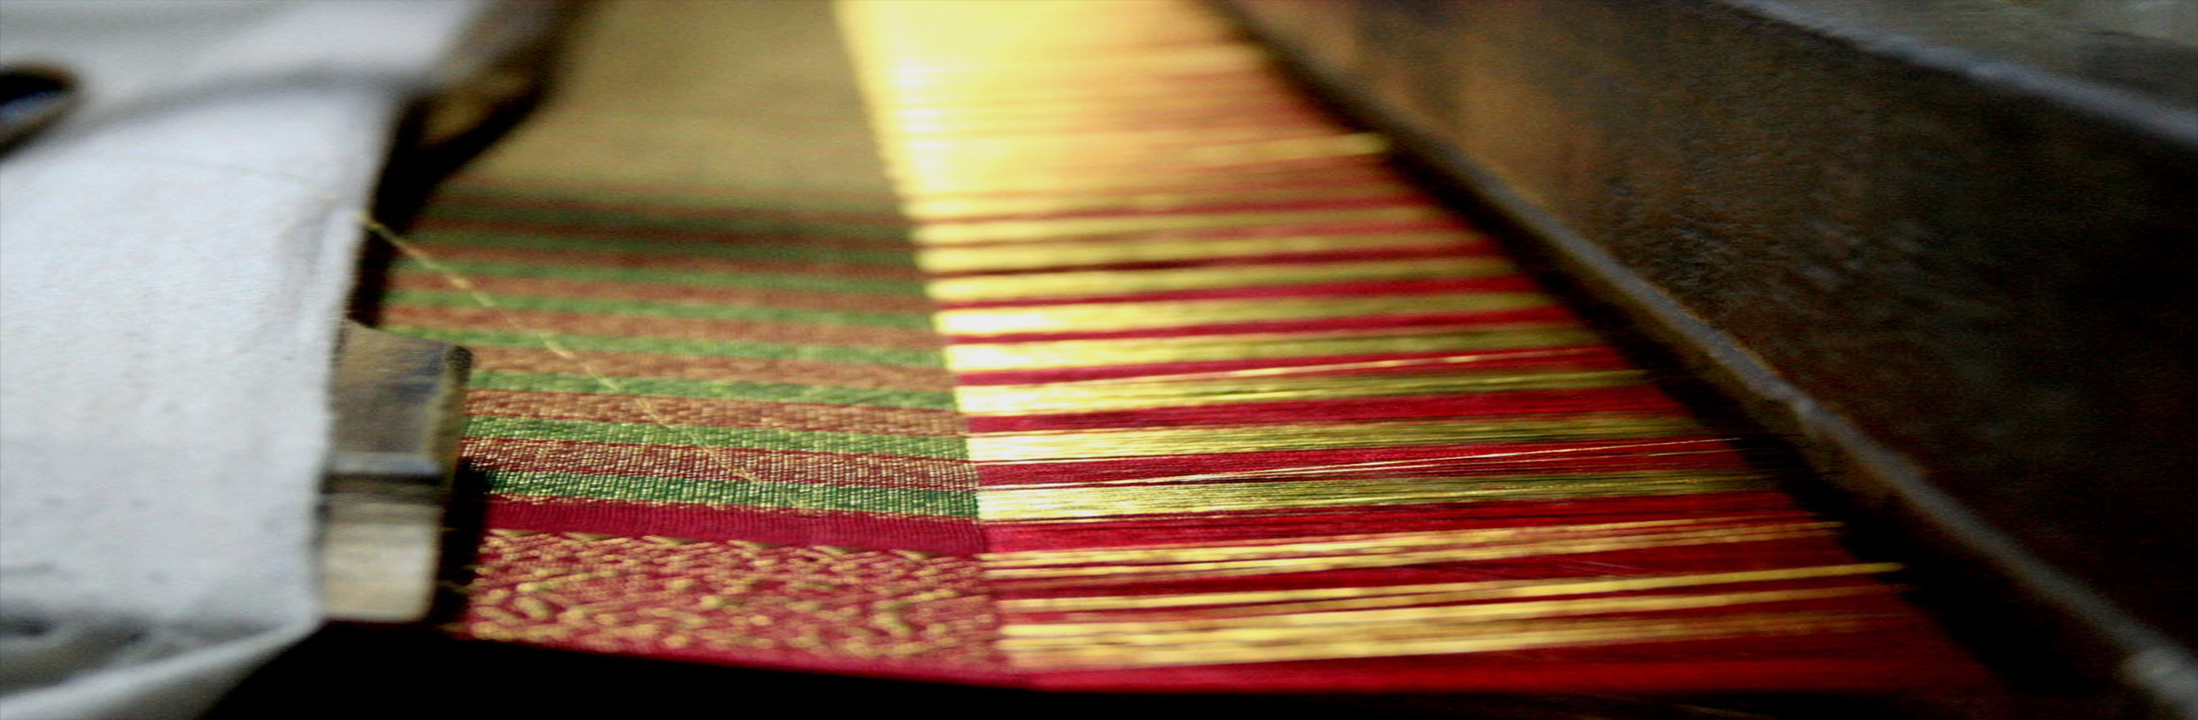 mats and saries